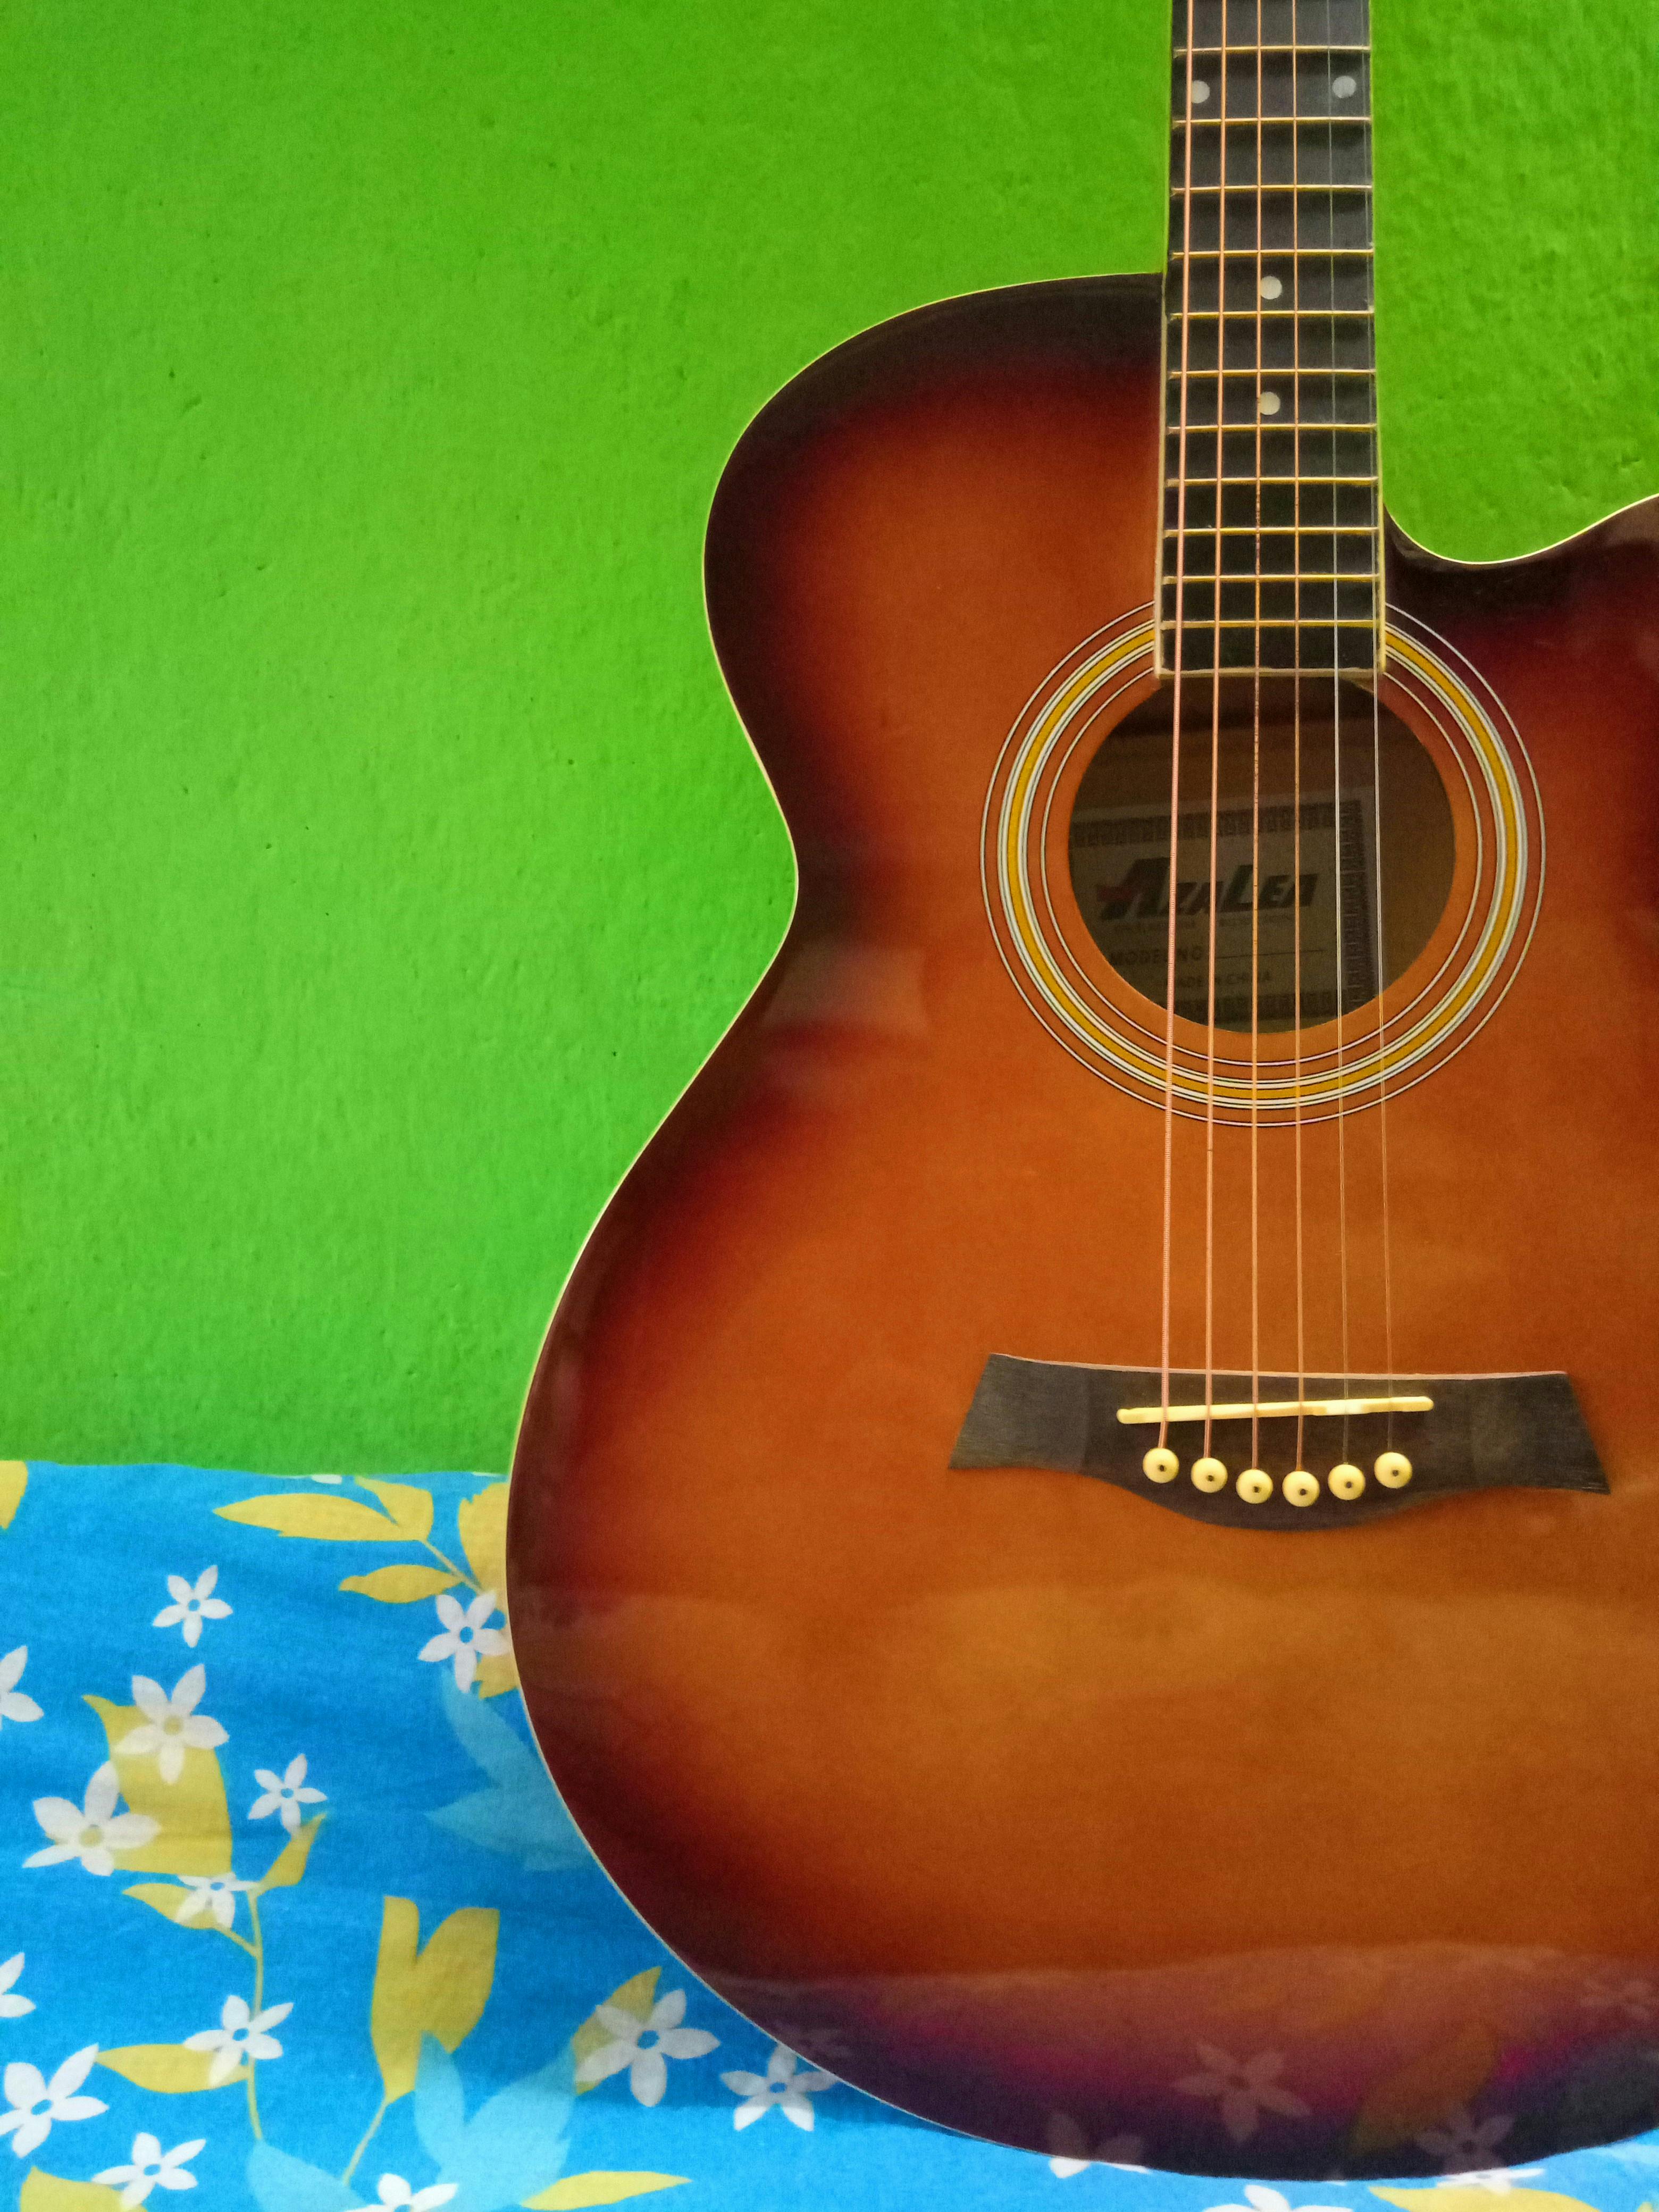 4kの壁紙 ギター ギターの弦の無料の写真素材